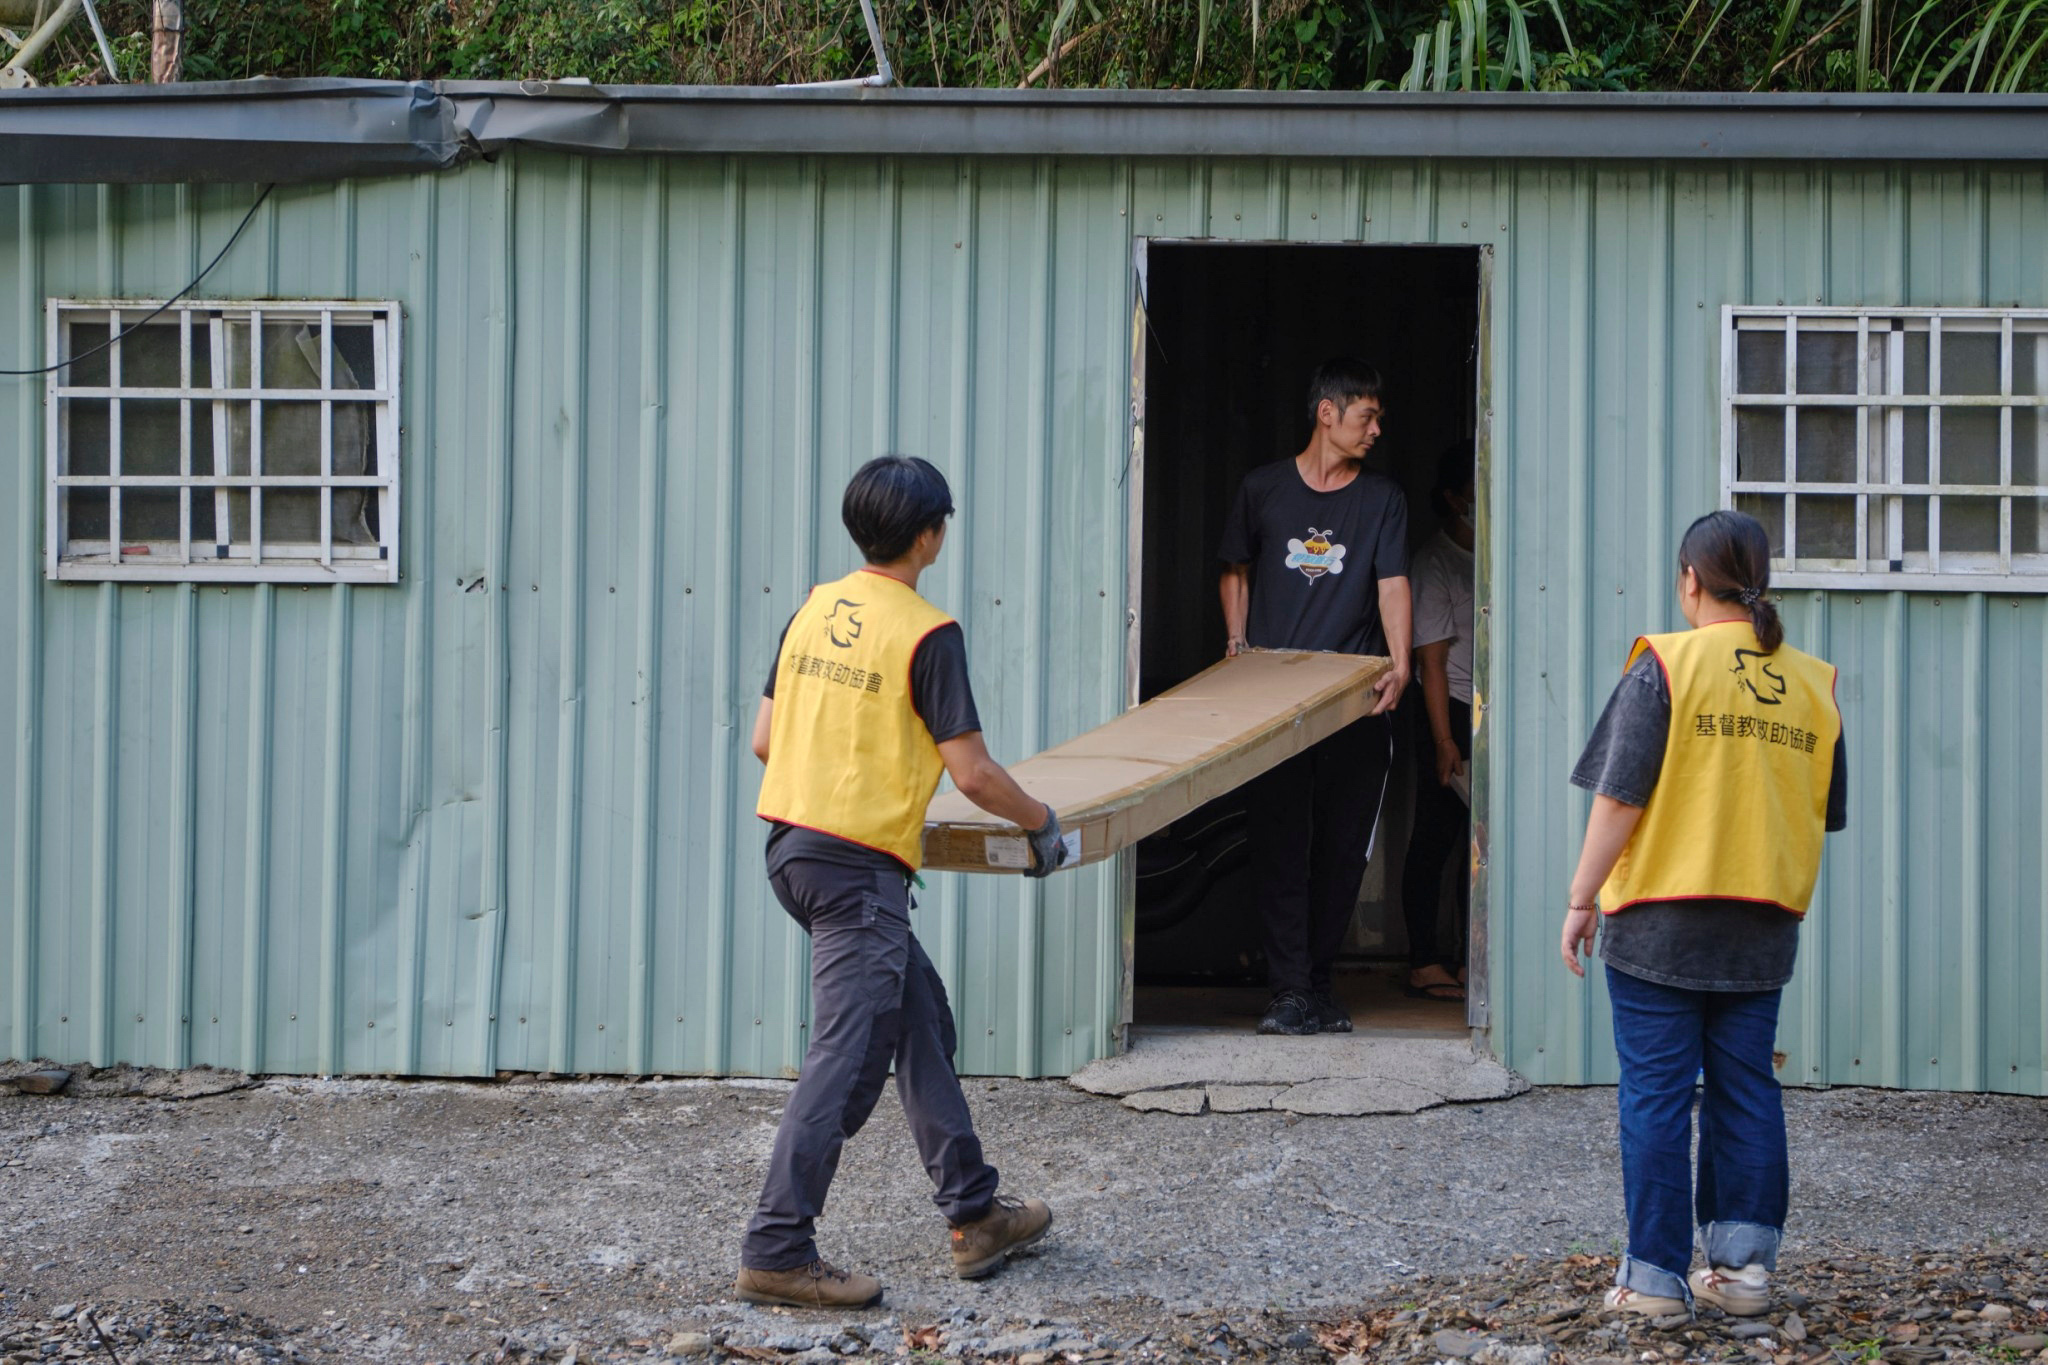 救助協會志工徒手搬運大型家具助受災戶重整家園。